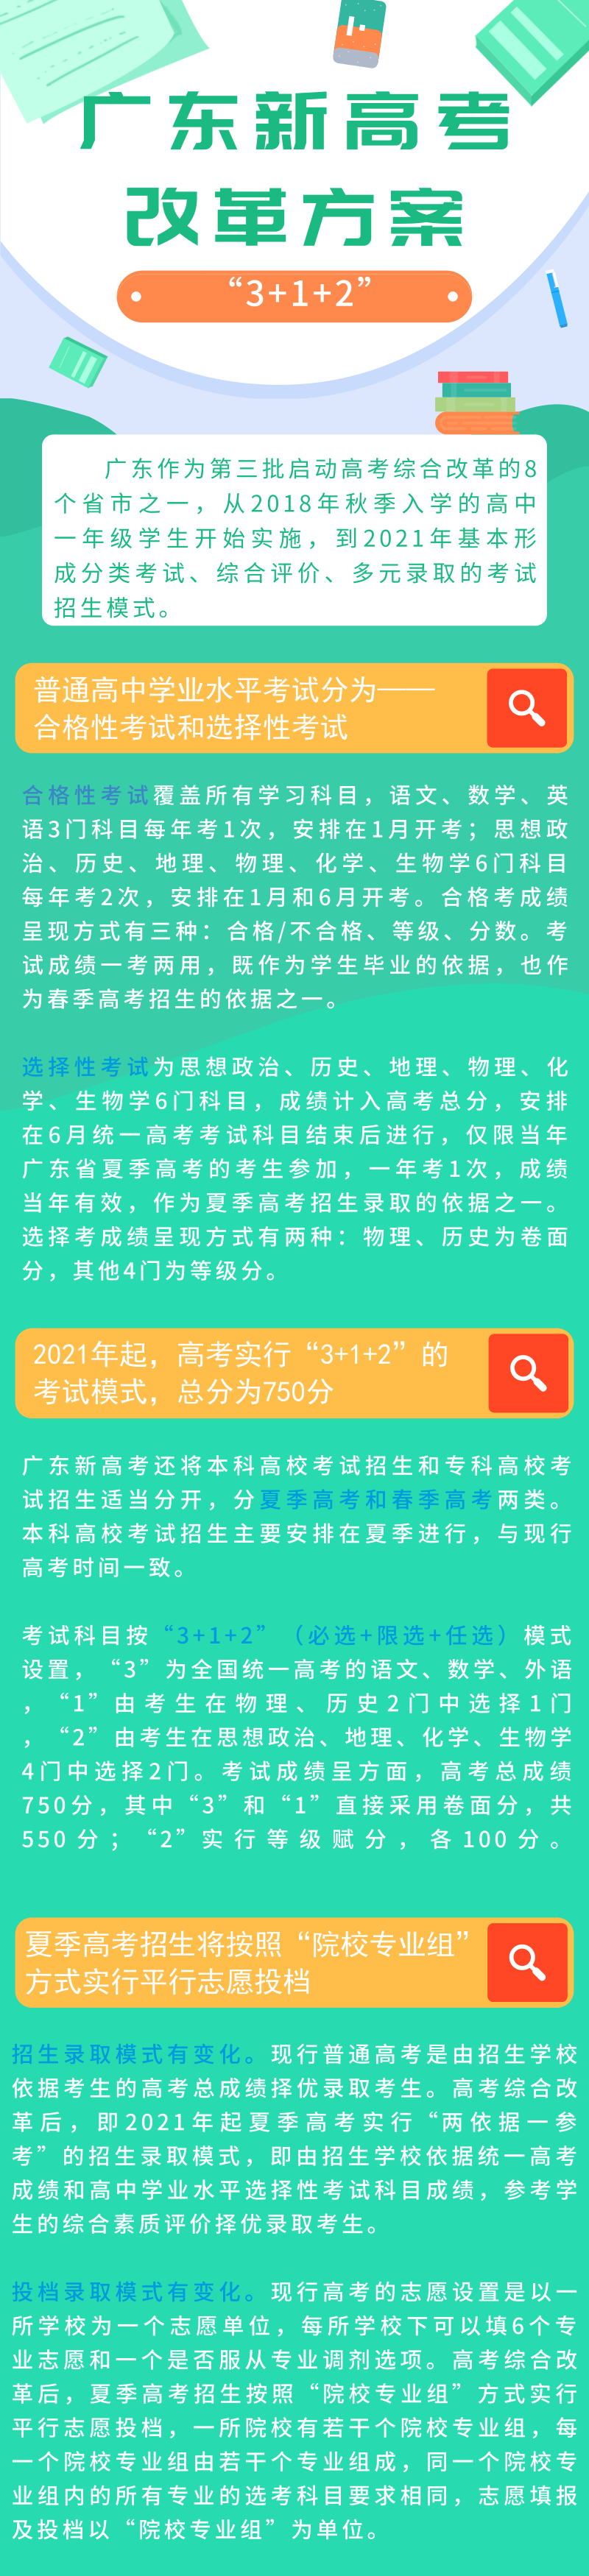 总分750，科目“3+1+2”，最全视频、图文详解广东高考综合改革方案！